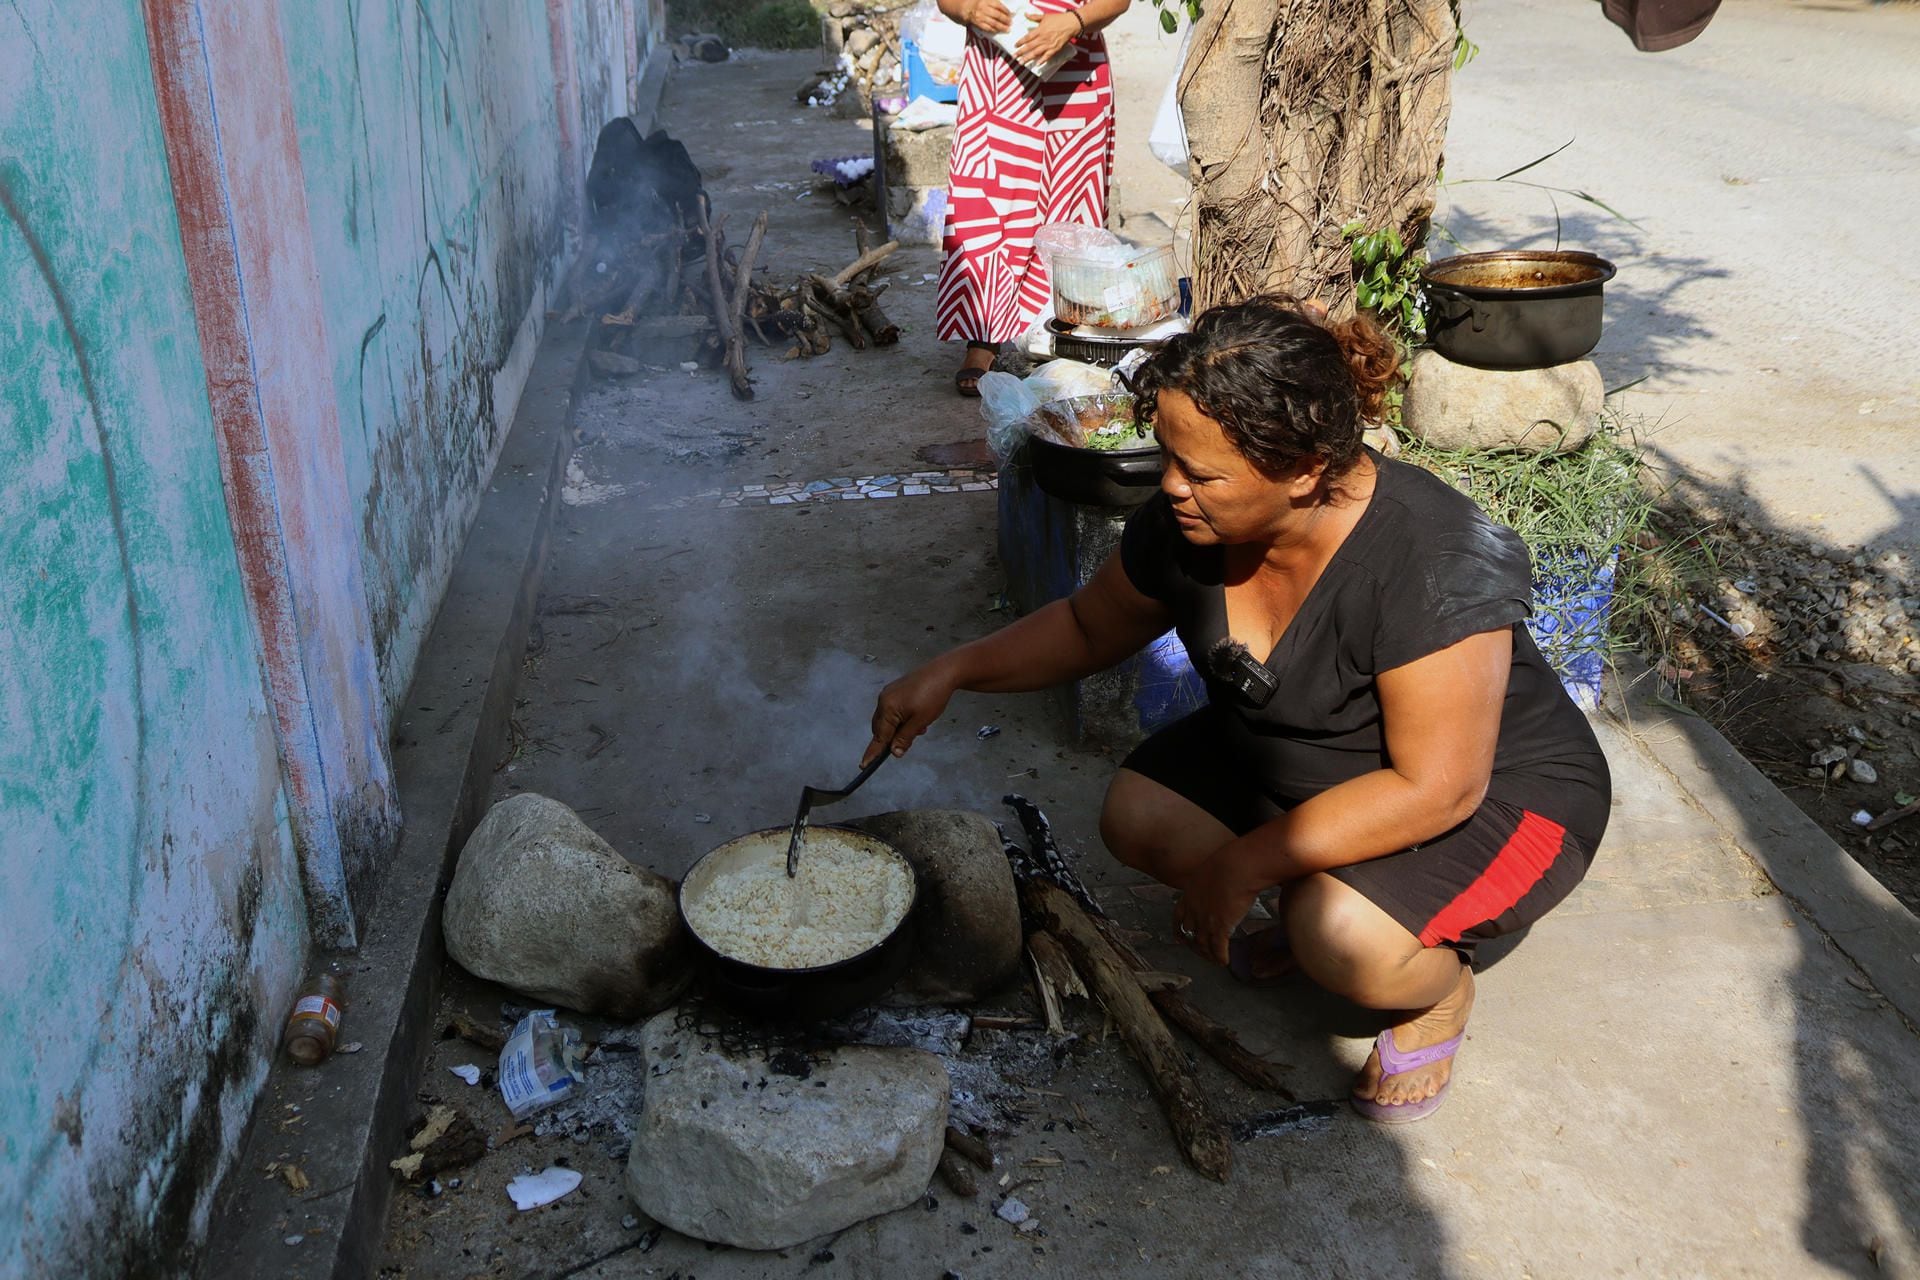 Migrantes en caravana hacia Estados Unidos preparan alimentos en un campamento improvisado hoy, en el municipio de Mapastepec, estado de Chiapas (México). EFE/Juan Manuel Blanco
